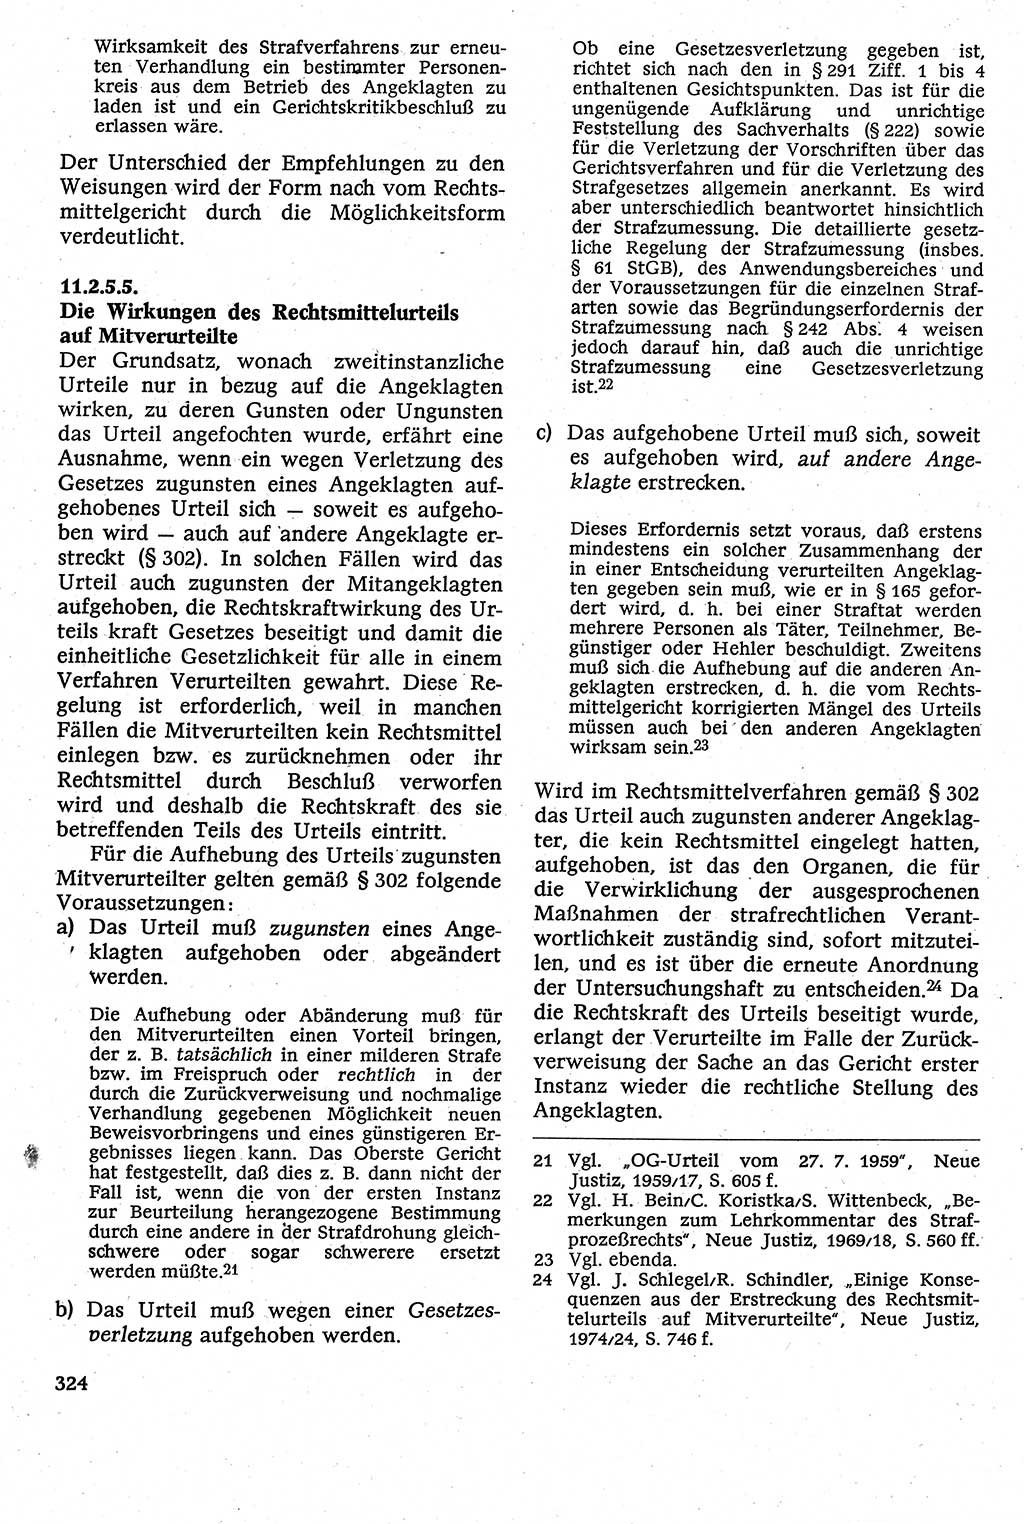 Strafverfahrensrecht [Deutsche Demokratische Republik (DDR)], Lehrbuch 1982, Seite 324 (Strafverf.-R. DDR Lb. 1982, S. 324)